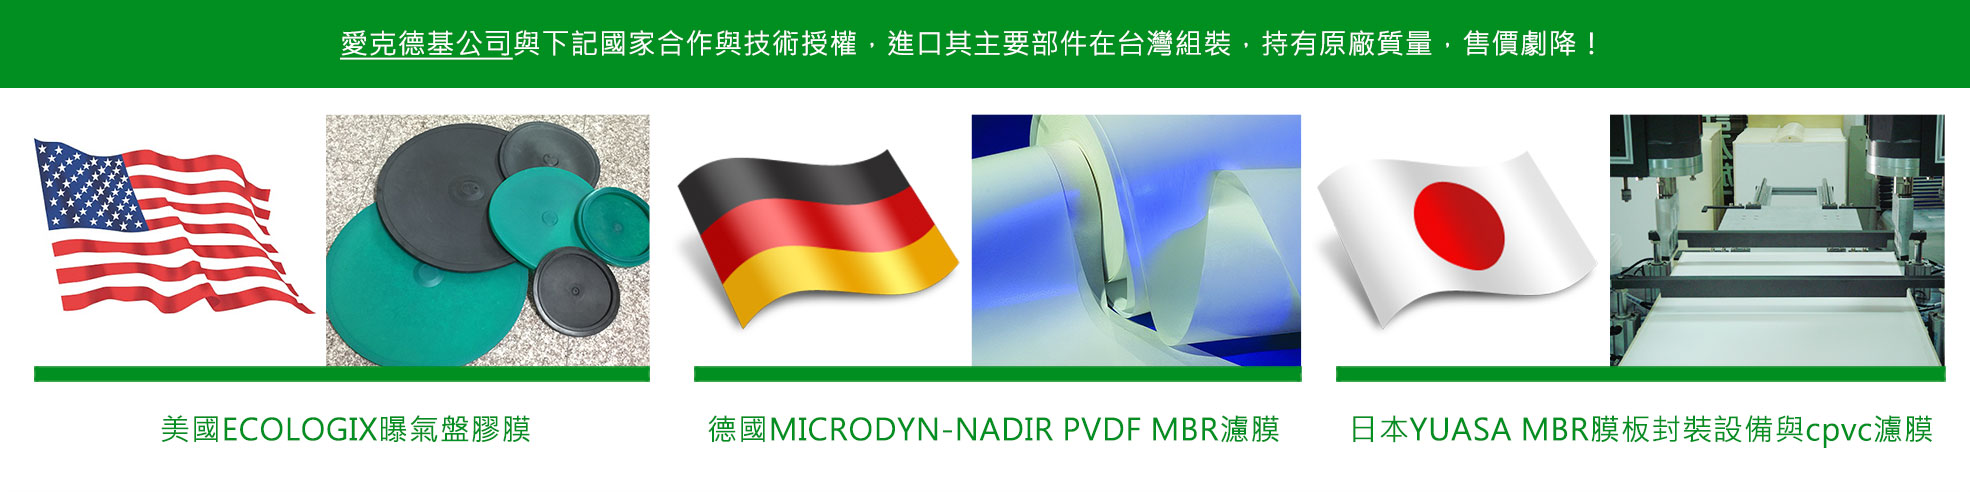 美國ECOLOGIX曝氣盤膠膜、德國PVDF、PES MBR濾膜、日本MBR膜板封装设备